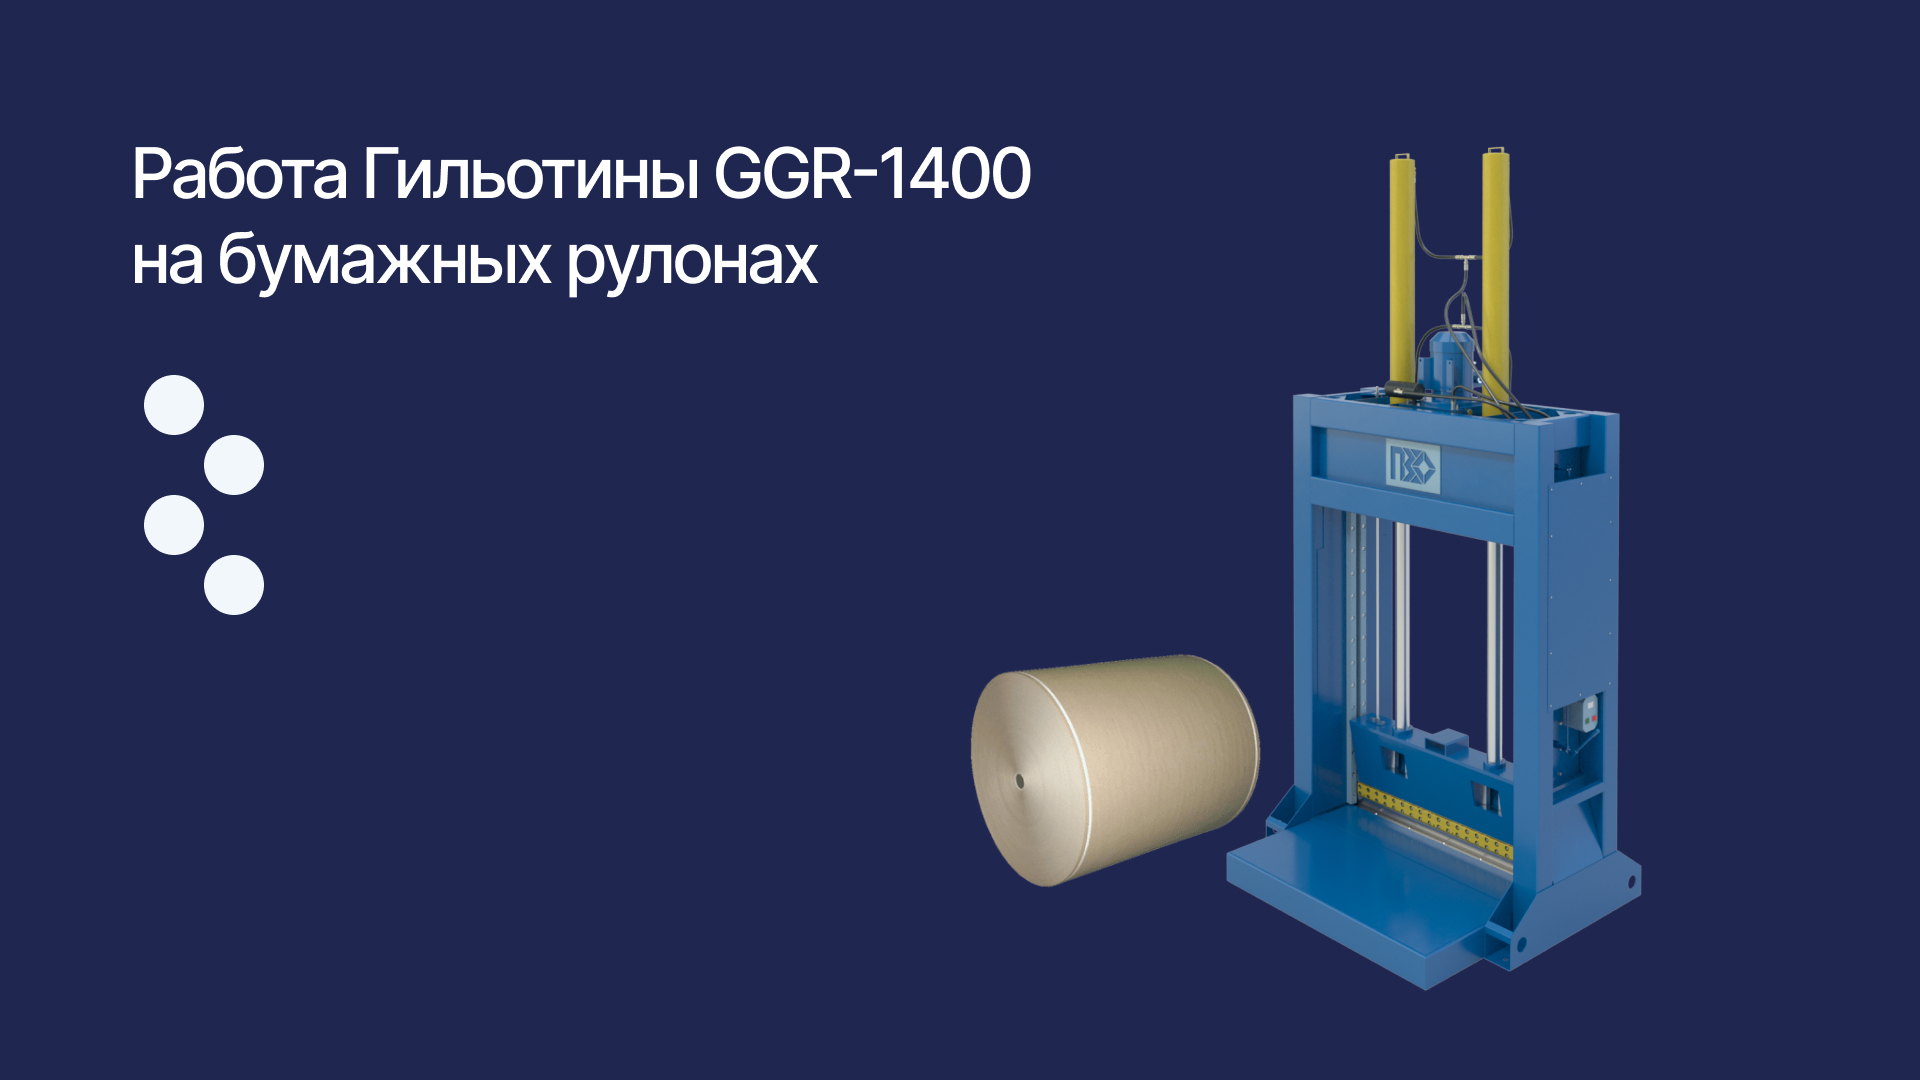 Гильотина GGR-1400 режет рулоны бумаги.